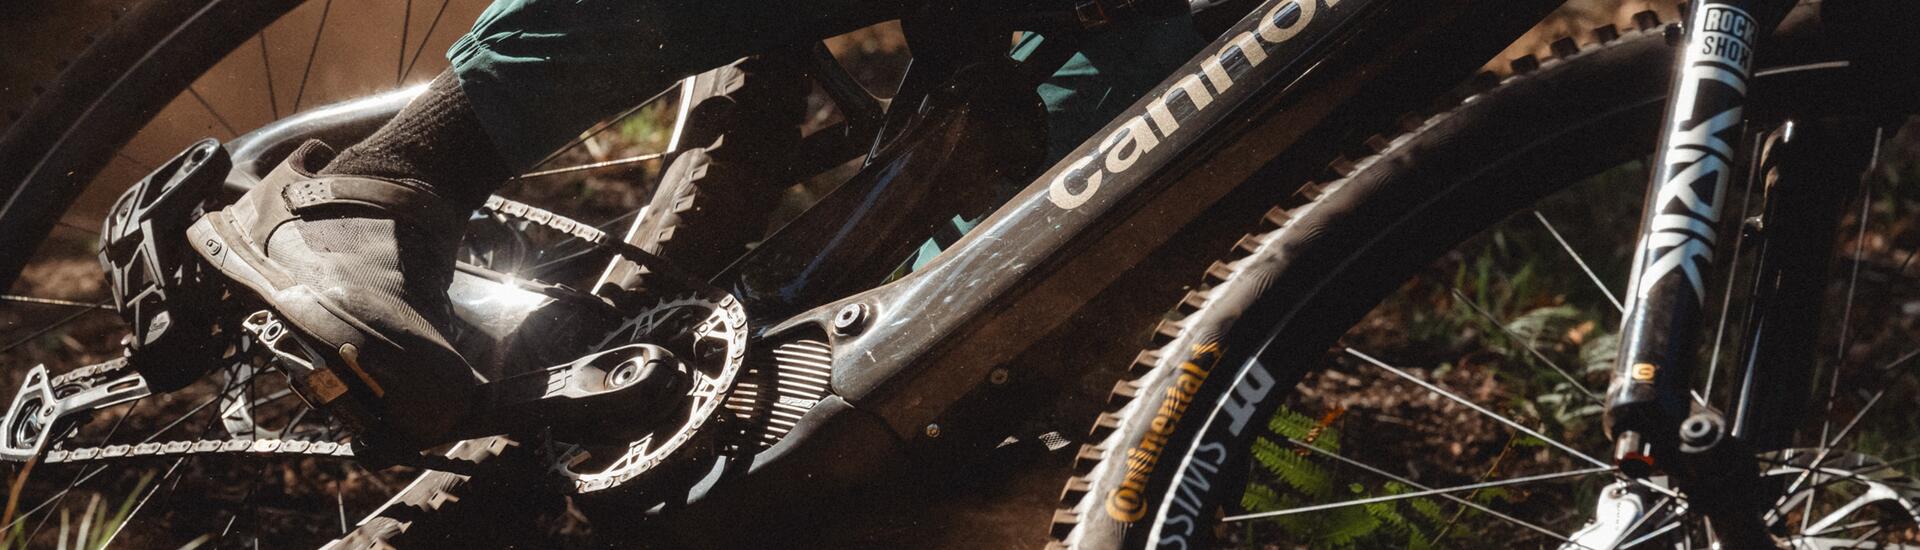 A Cannondale bemutatta a vadonatúj Moterra SL-t: A valaha készült legkönnyebb „full-power” e-bike-t*